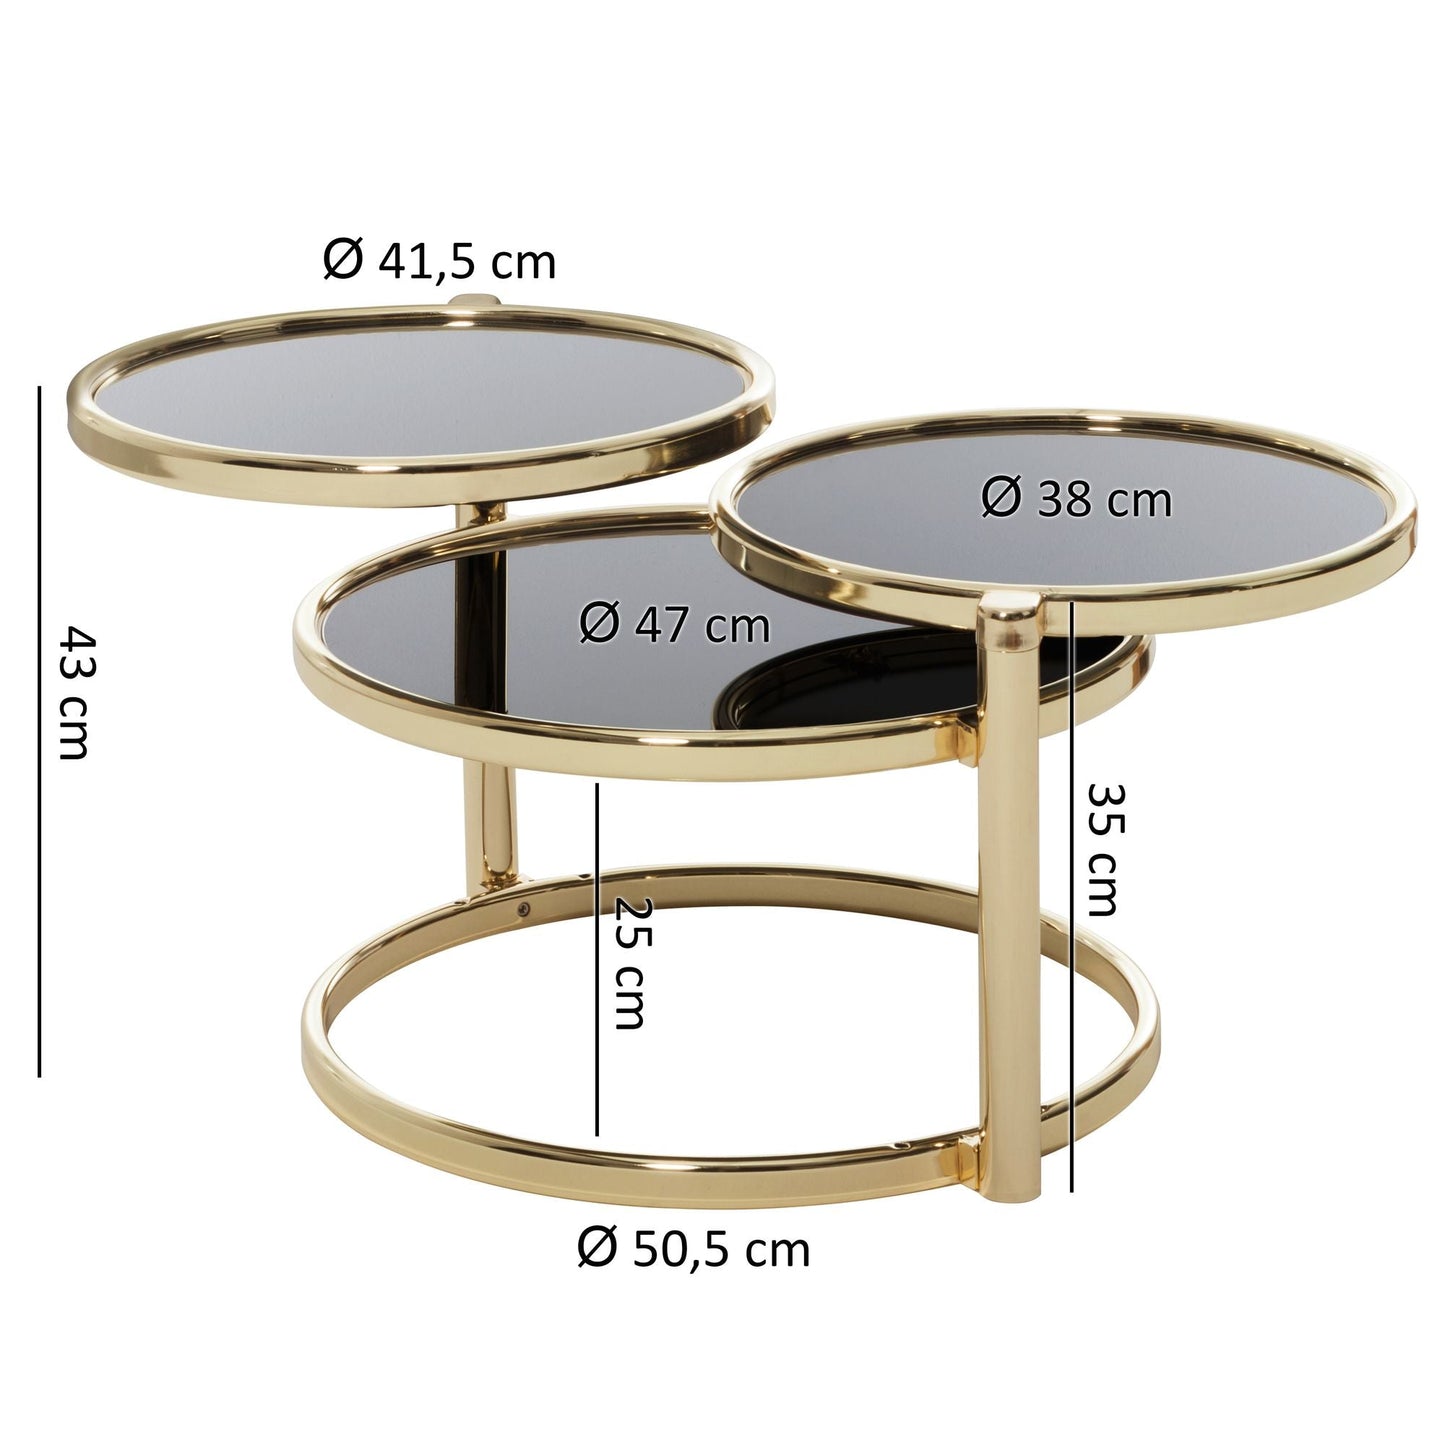 Table basse Beaufort de Nancy - Trois couches - Table d'appoint - Table basse ronde - Métal - Verre - Noir - Or/Cuivre